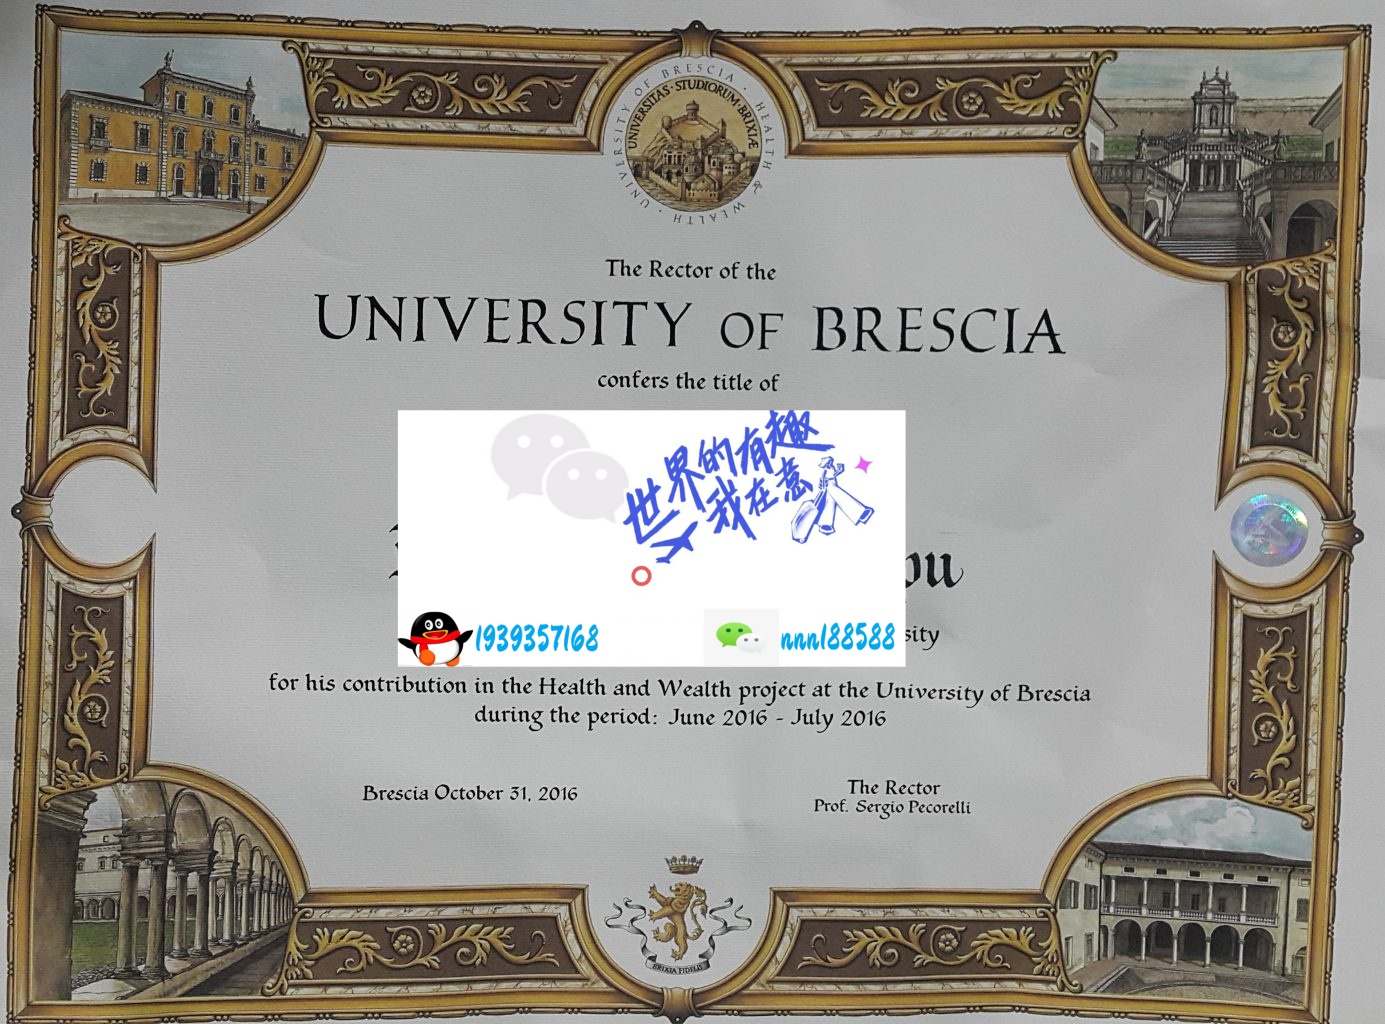 意大利布雷西亚大学 University of brescia_副本wp